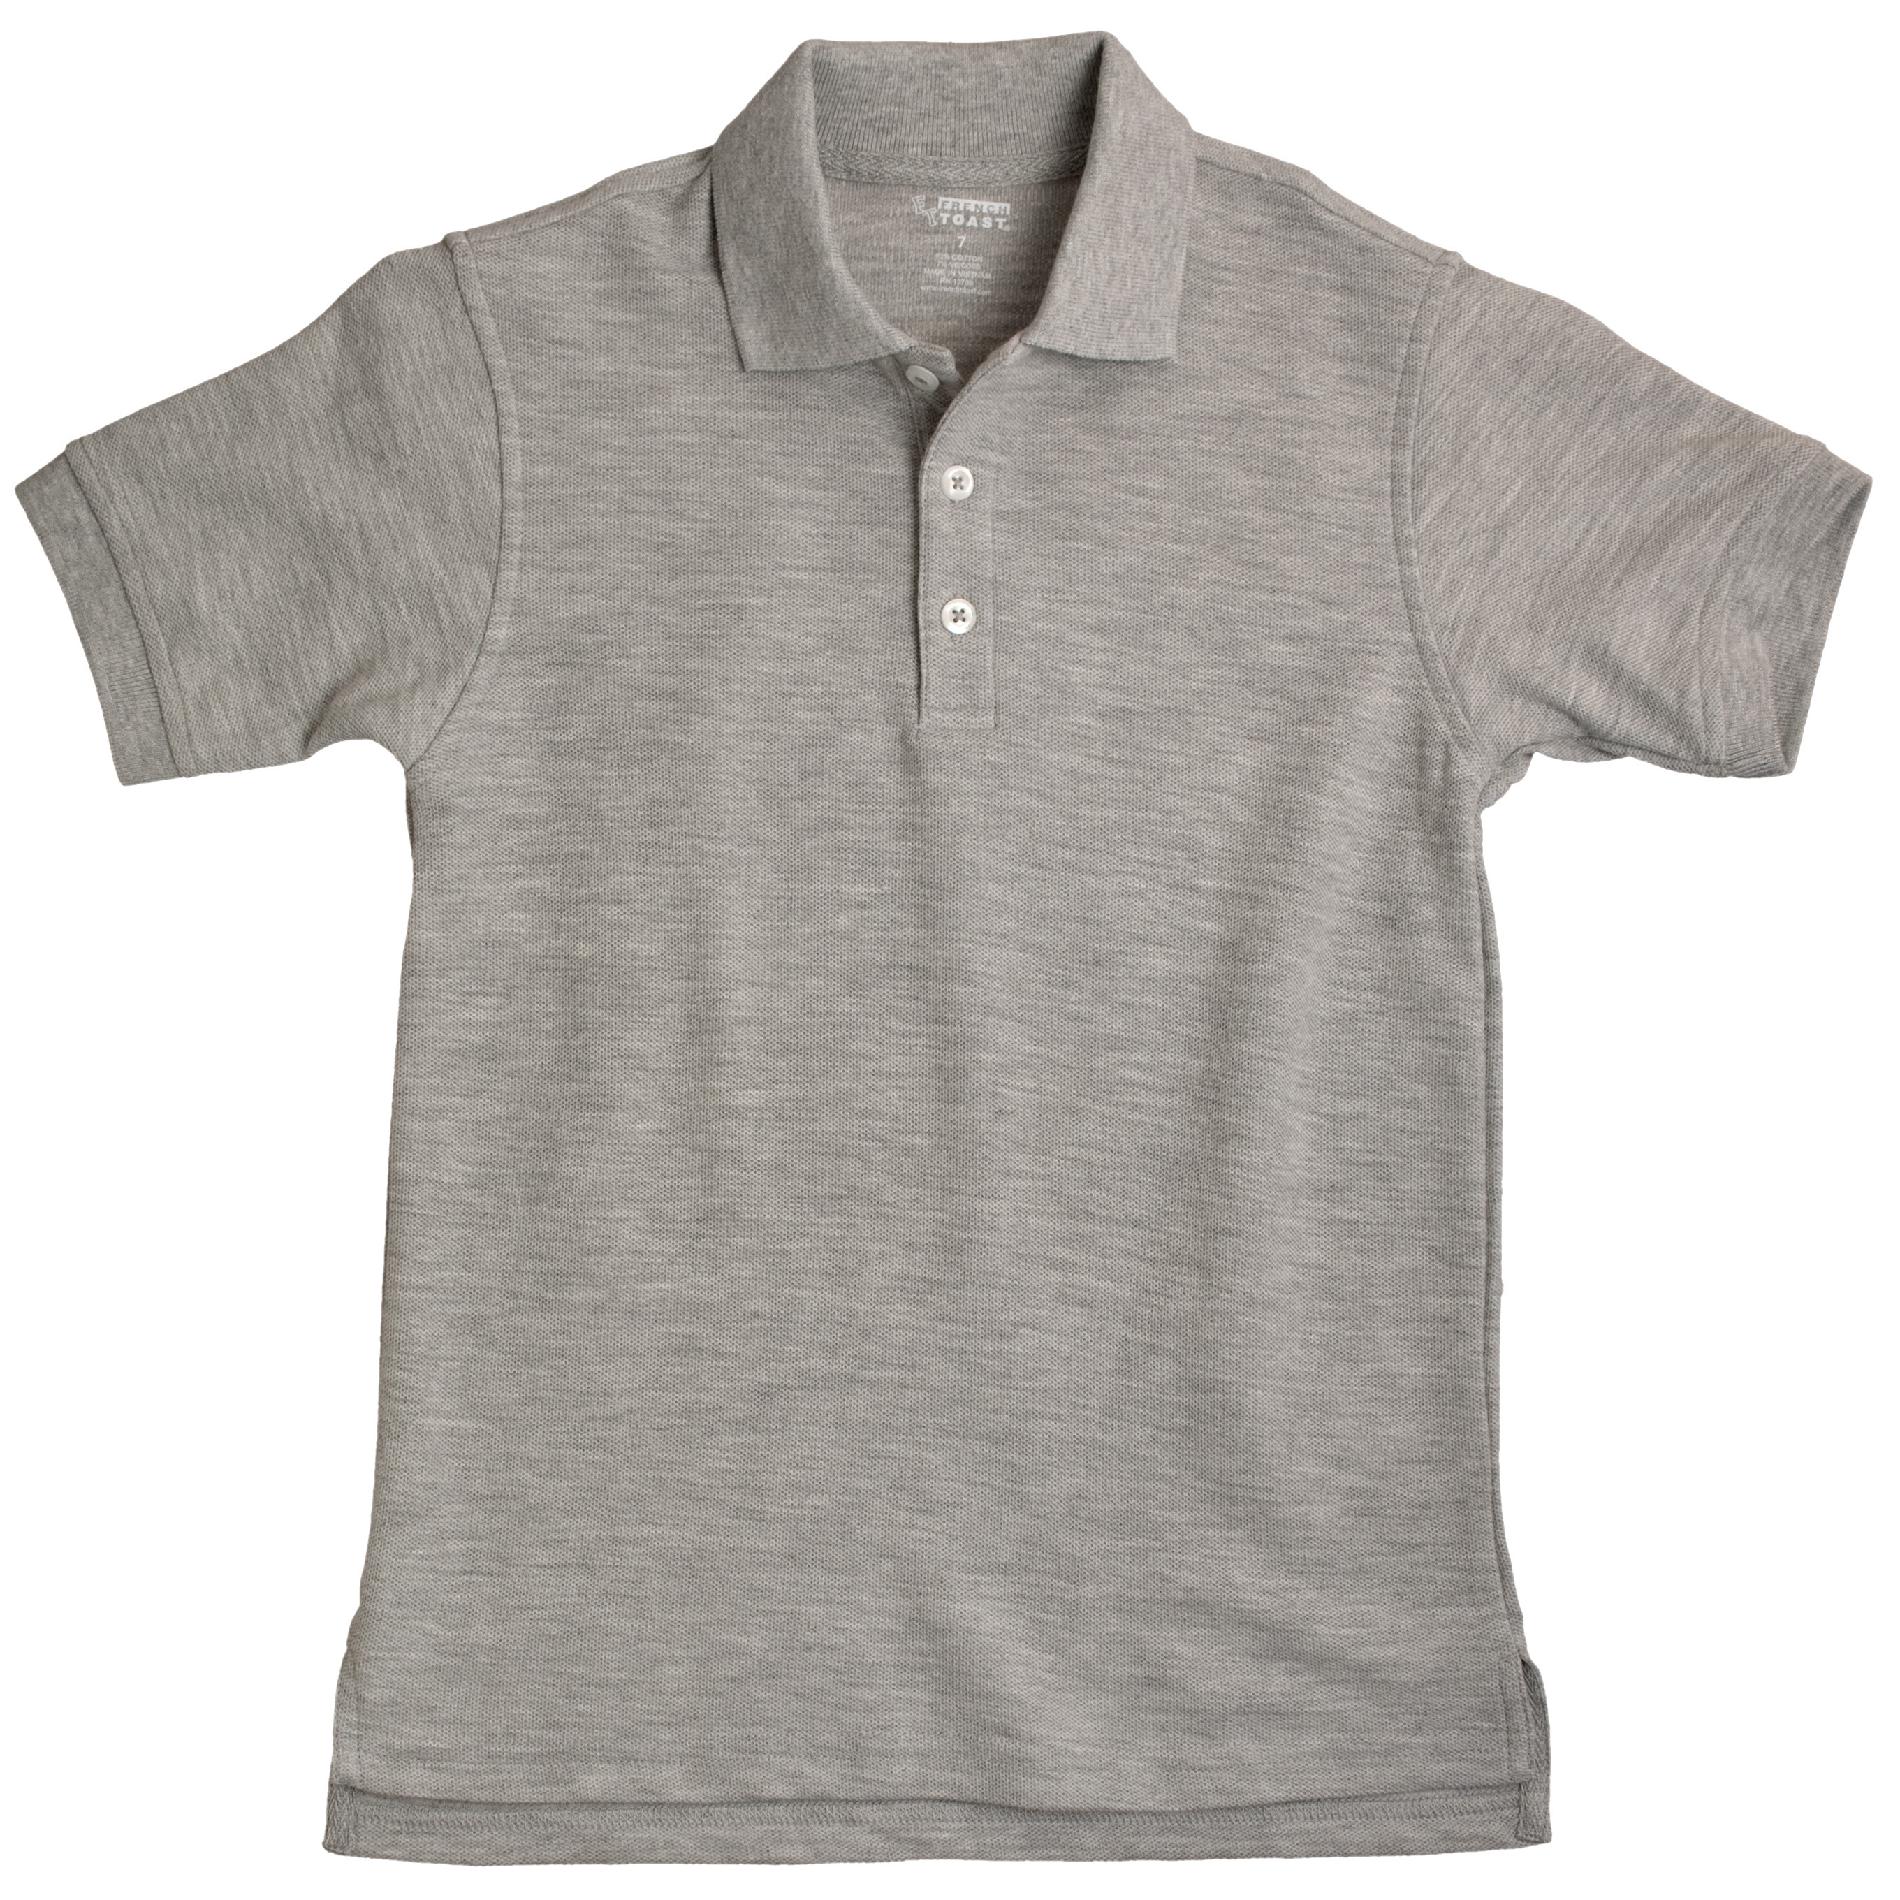 Unisex 4-7 Short Sleeve Pique Polo Shirt